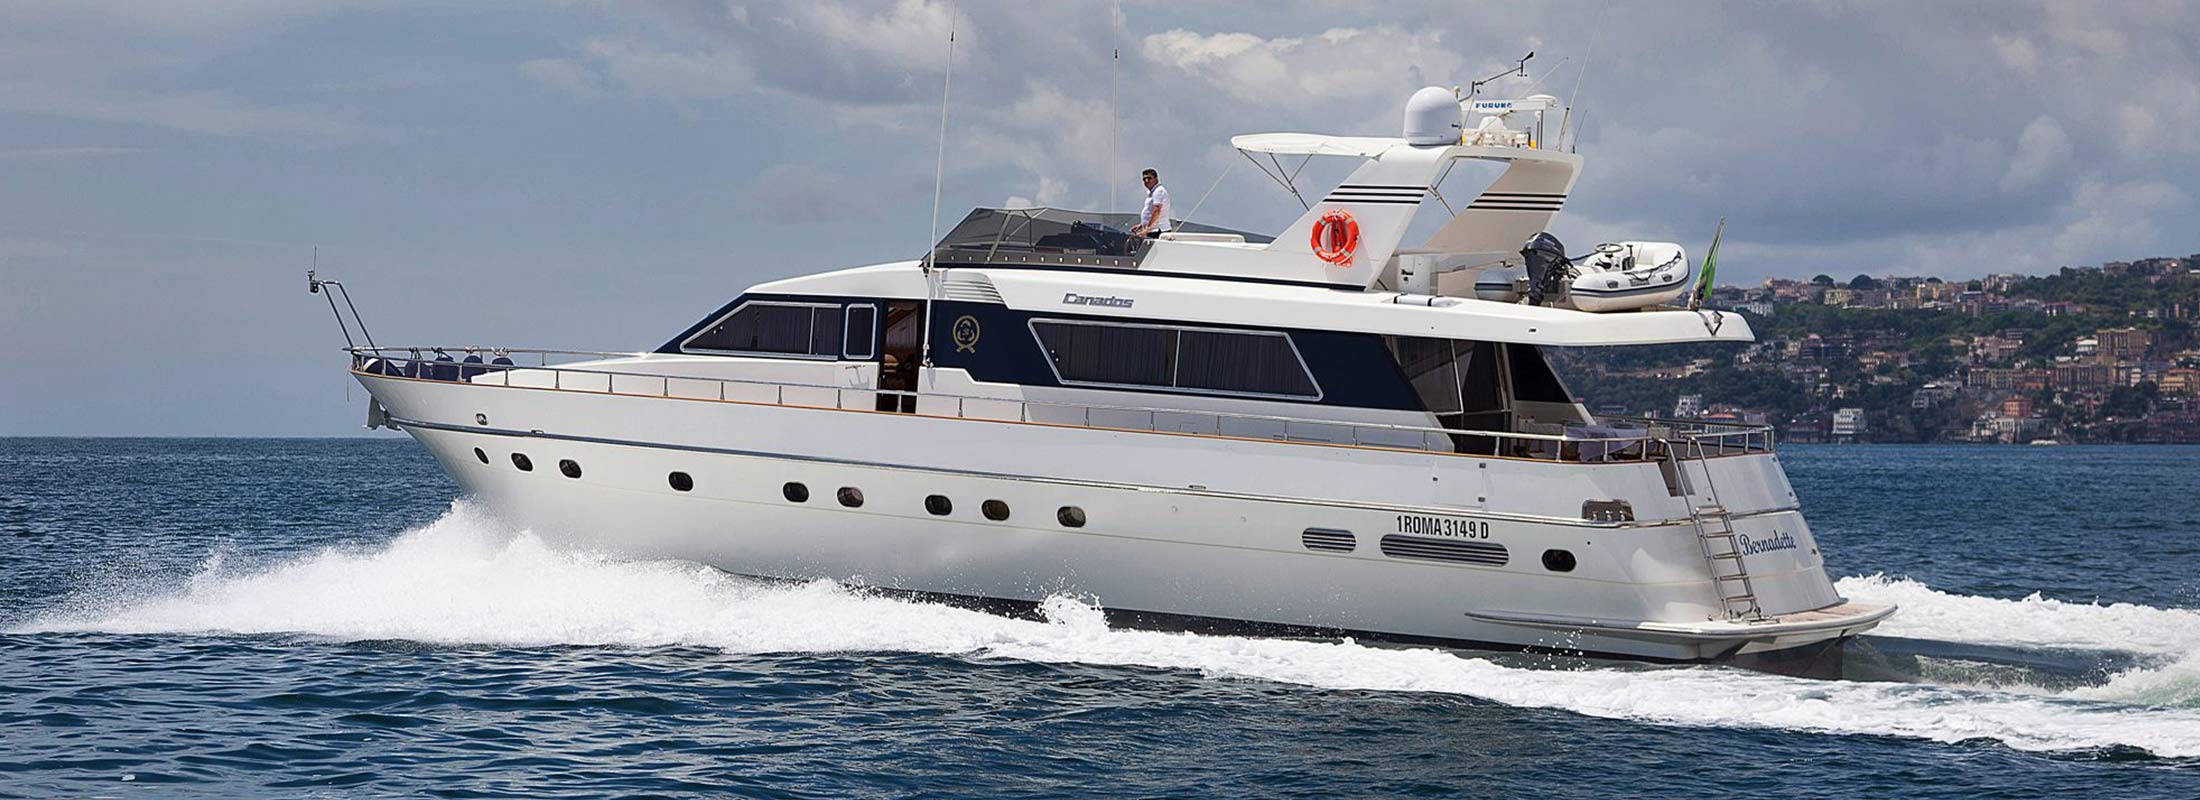 Bernadette Motor Yacht for Charter Mediterranean slider 3